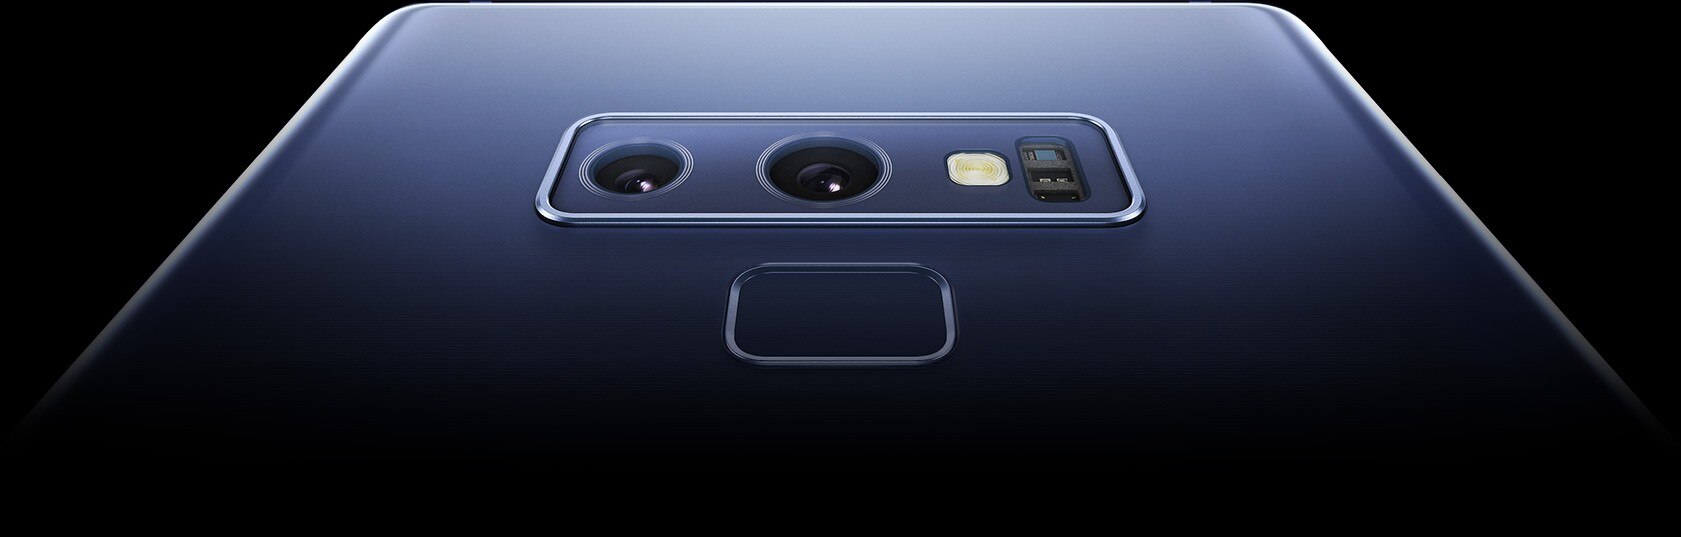 لقطة مقربة جداً تظهر الكاميرا الخلفية ذات فتحة العدسة المزدوجة والماسح الذكي لبصمة الأصبع في هاتف Galaxy Note9